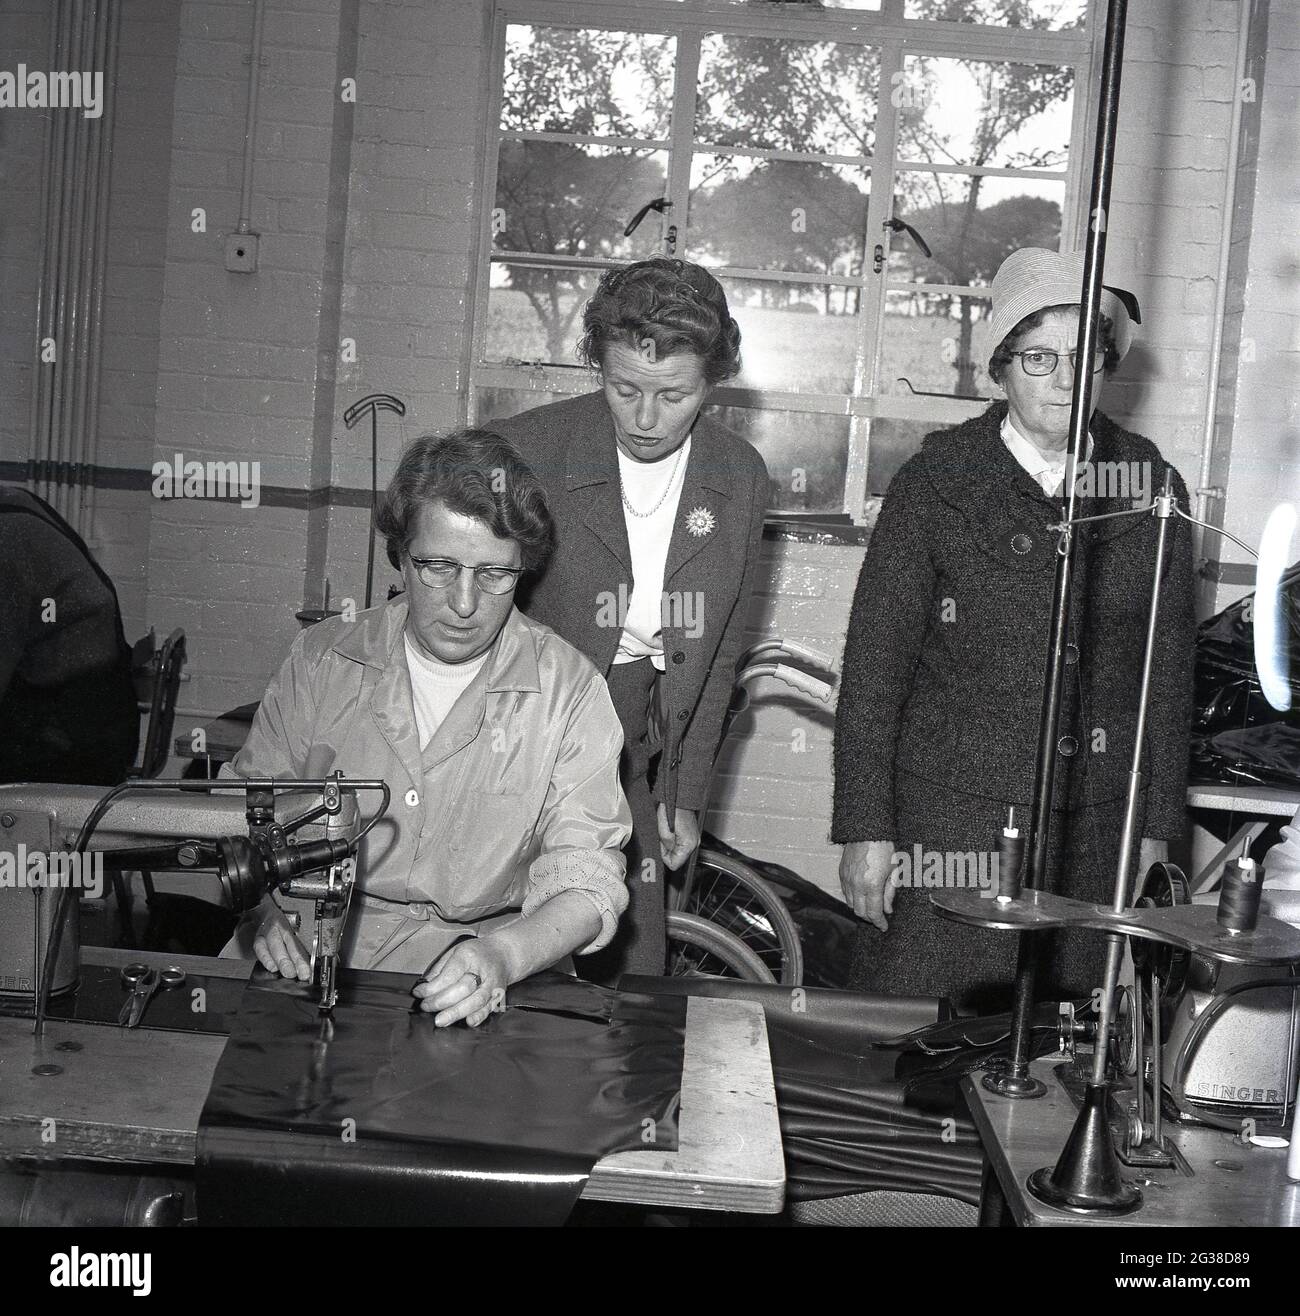 Anni Sessanta, storico, all'interno di un'unità indistributiva, due consiglieri femminili locali, in piedi da una lavoratrice femminile, rioccupati nell'industria, usando una macchina per cucire o sigillare i fogli protettivi, Cowdenbeath, Fife, Scozia. Foto Stock